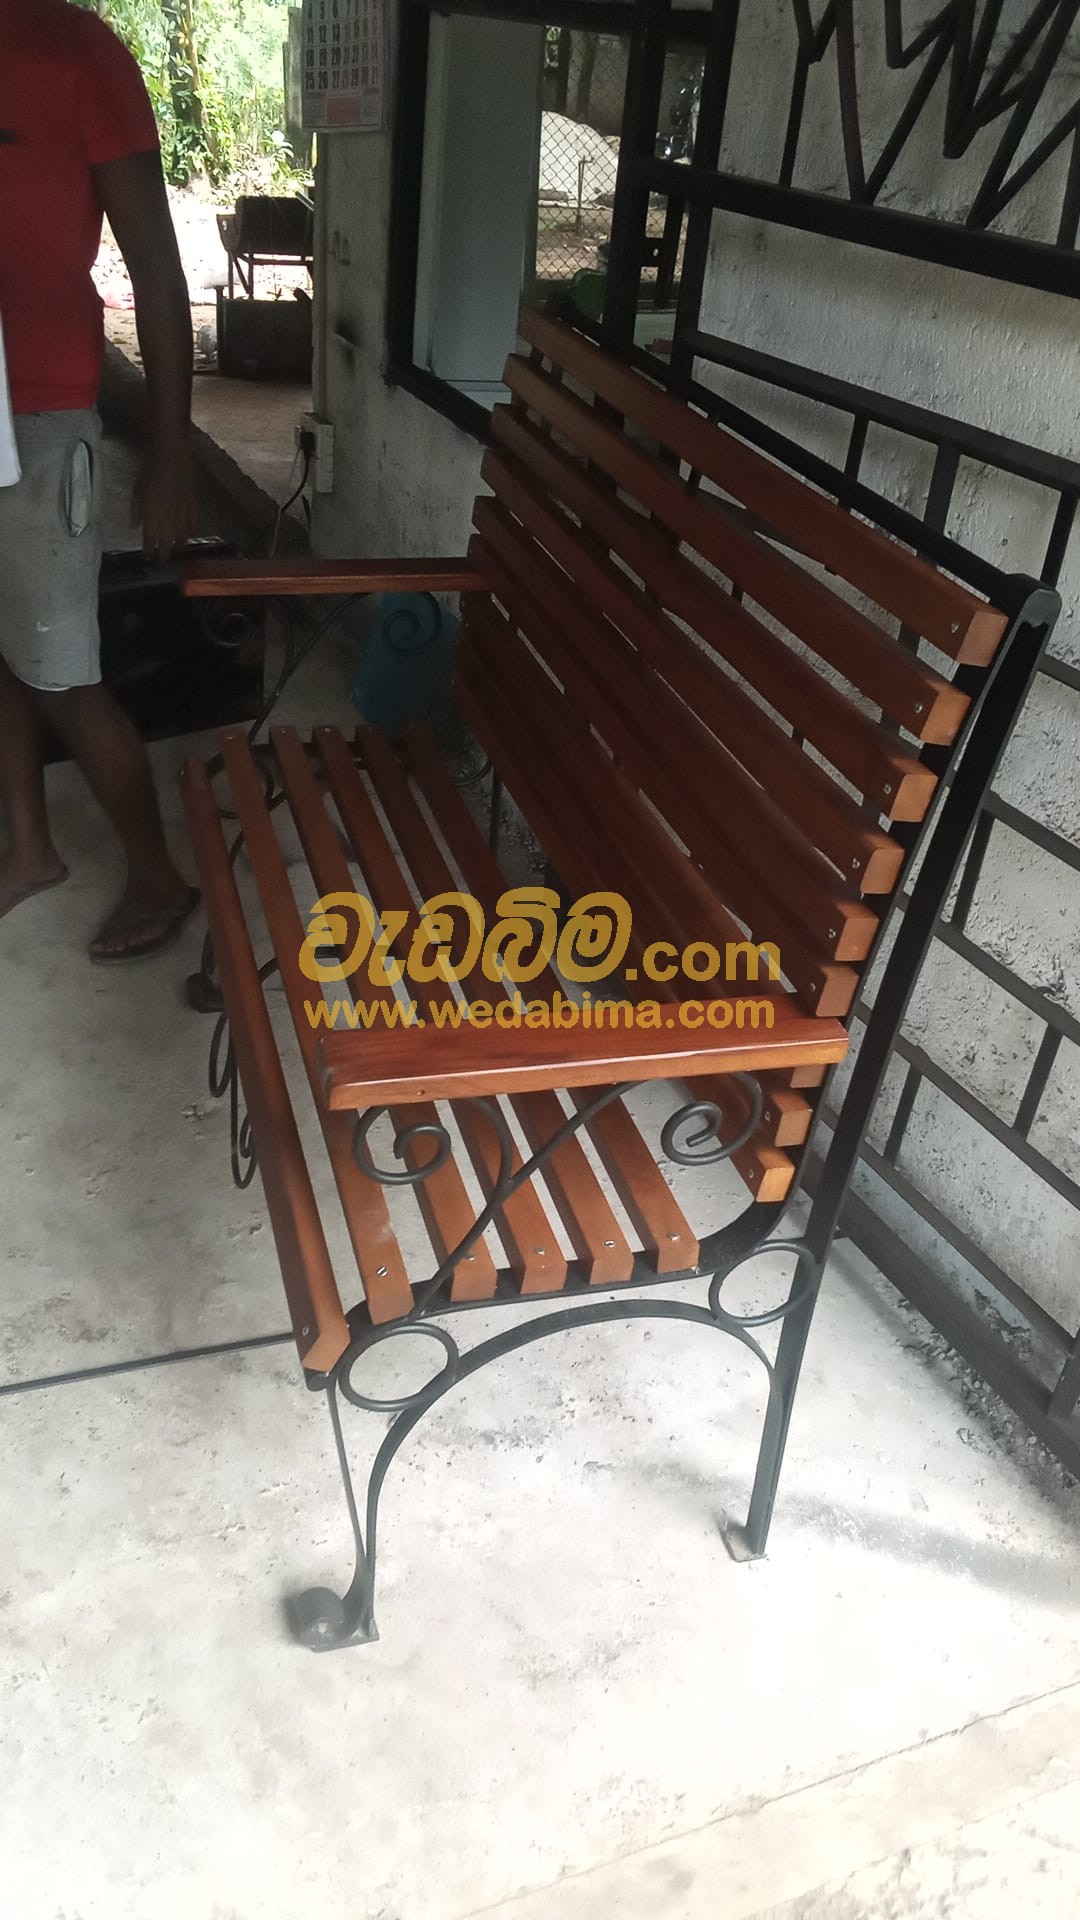 Cover image for furniture price in sri lanka